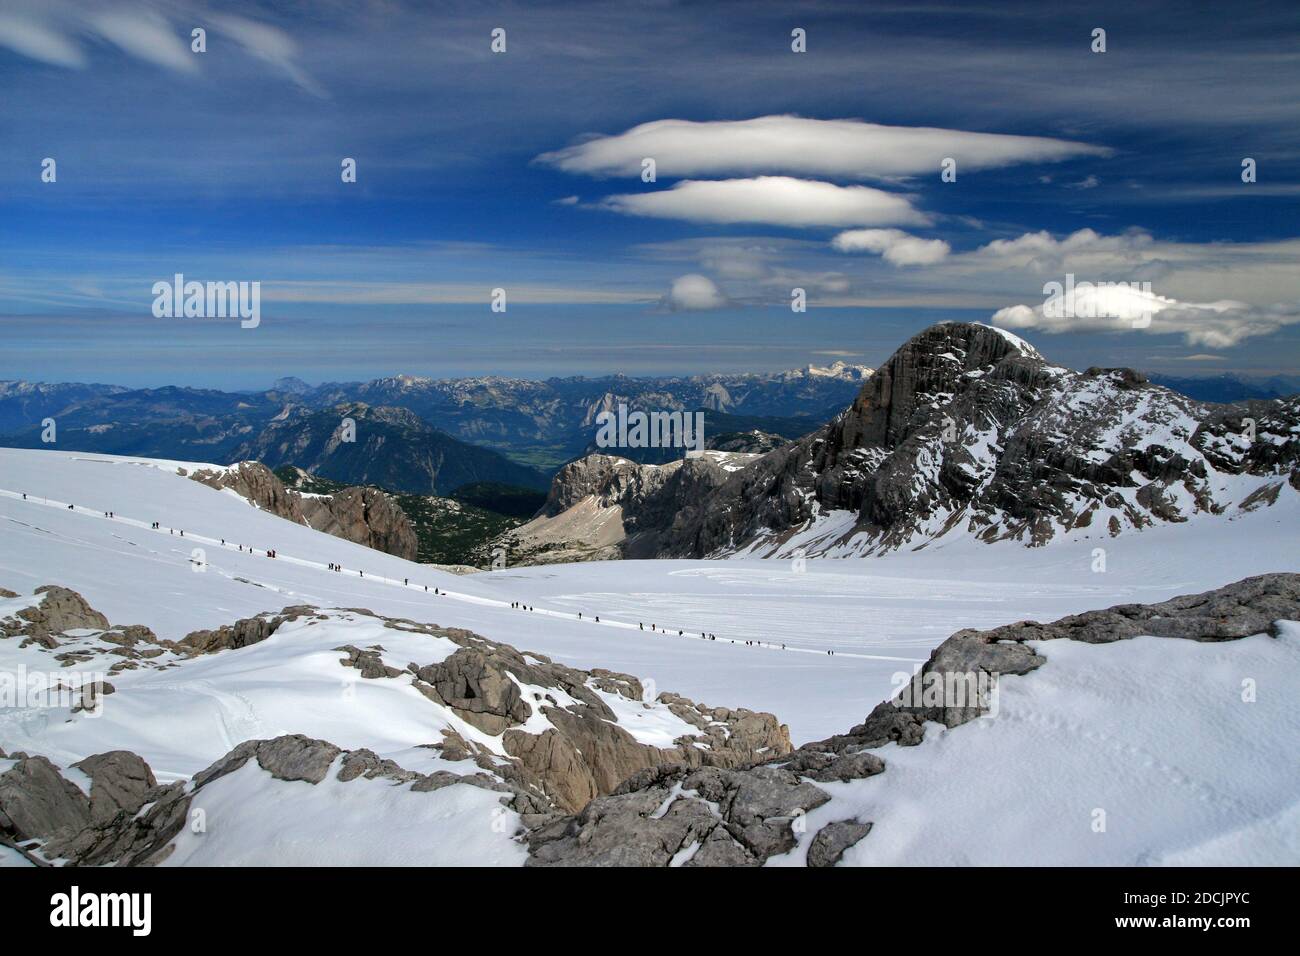 Hoher Dachstein (2995 m), la deuxième plus haute montagne des Alpes calcaires du Nord, en Autriche Banque D'Images